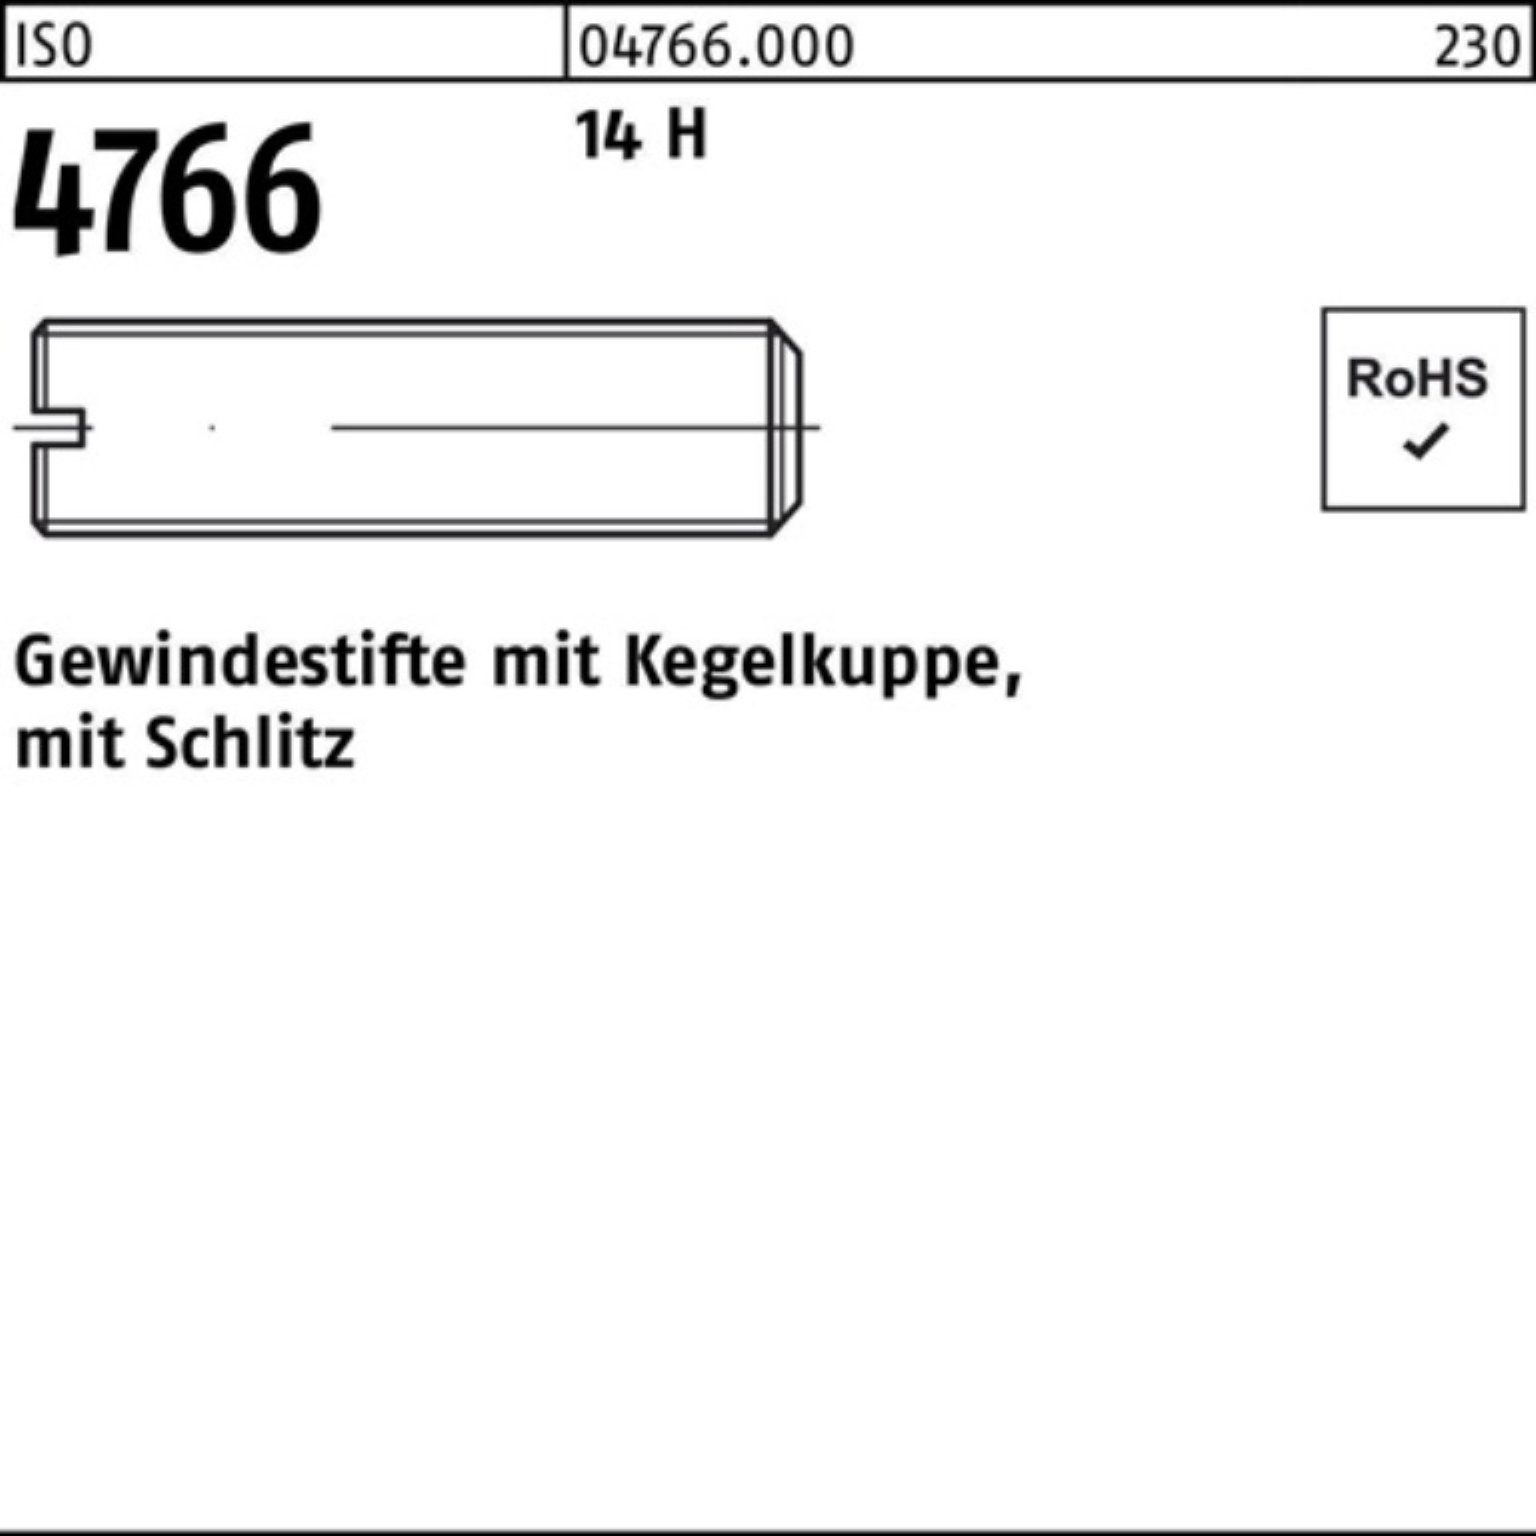 Reyher Gewindebolzen 100er Pack Gewindestift 4766 35 M10x 14 H ISO 100 S Kegelkuppe/Schlitz